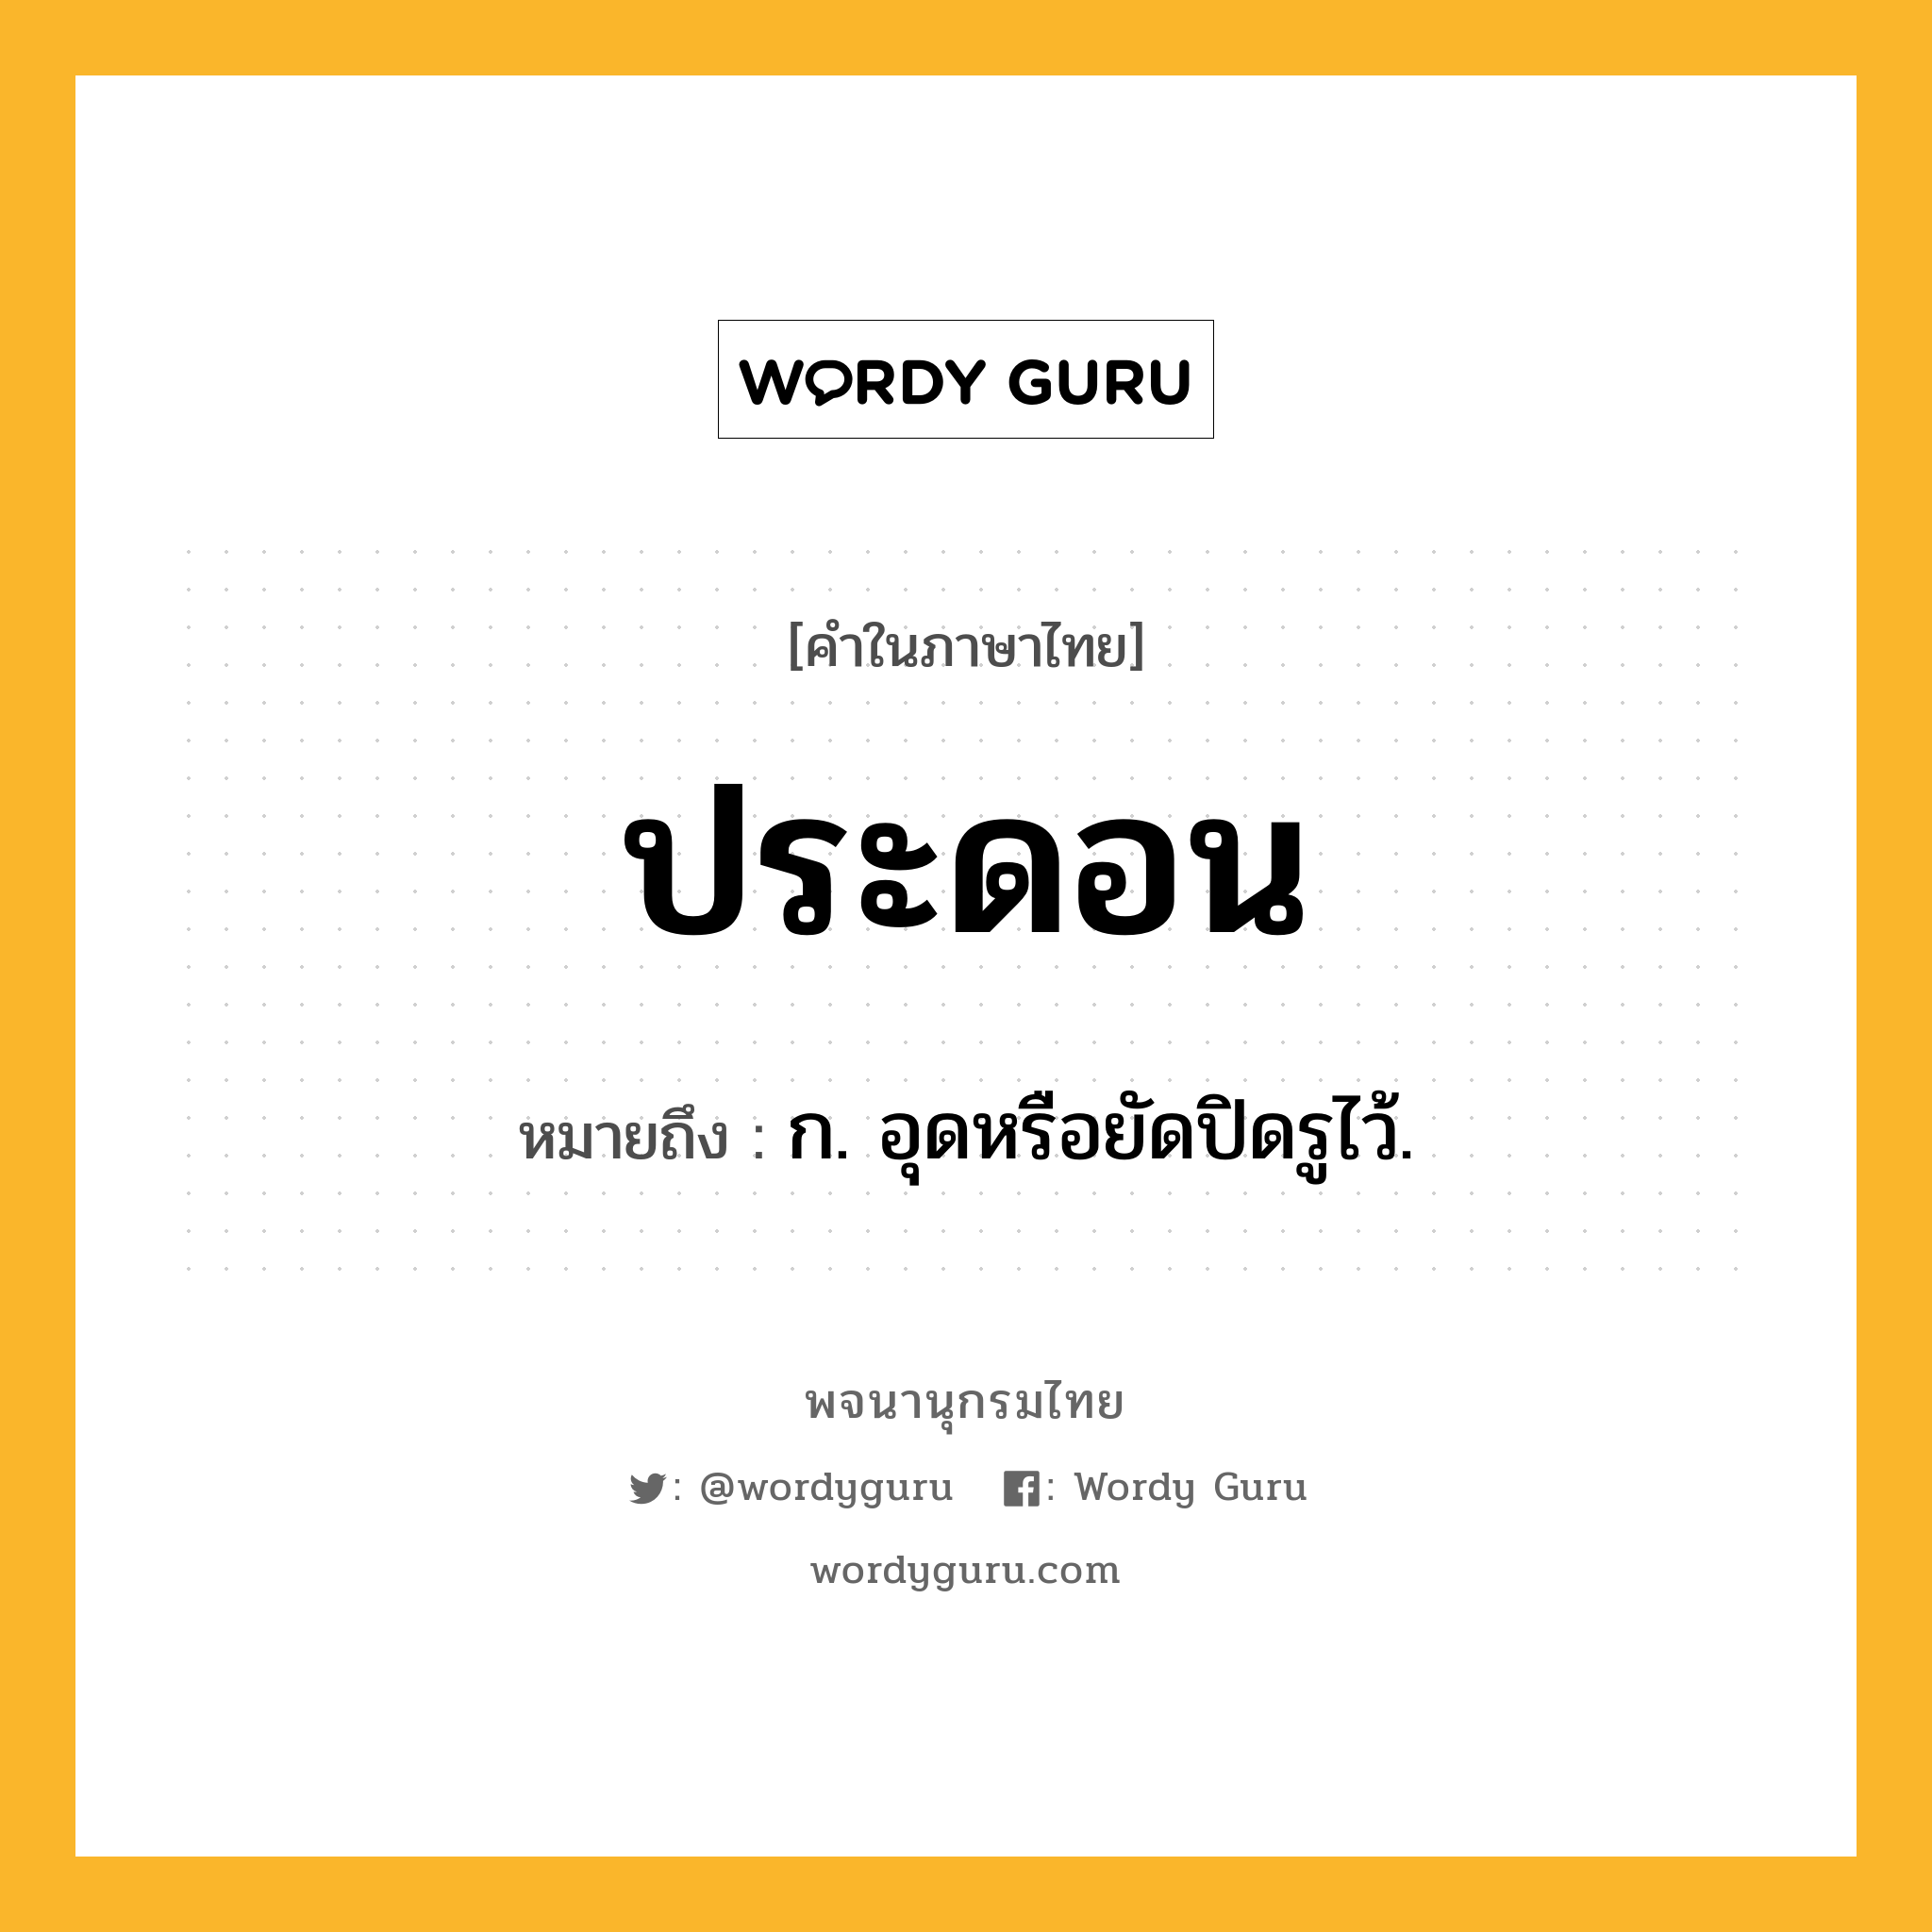 ประดอน หมายถึงอะไร?, คำในภาษาไทย ประดอน หมายถึง ก. อุดหรือยัดปิดรูไว้.